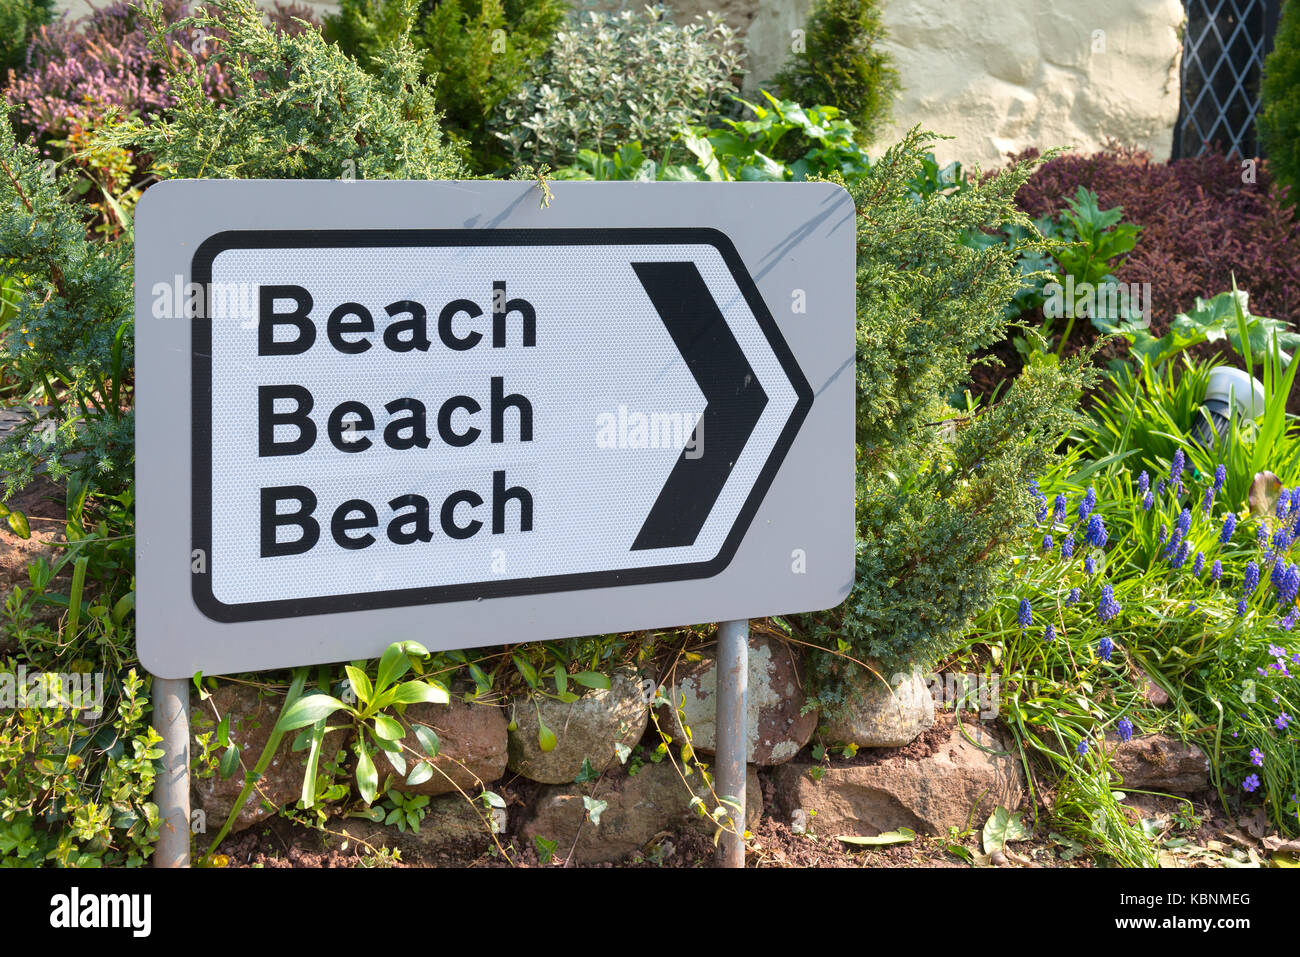 'Réfléchissant composé de plage, plage, plage' signe vers la droite de fleurs et d'arbustes dans l'arrière-plan Banque D'Images